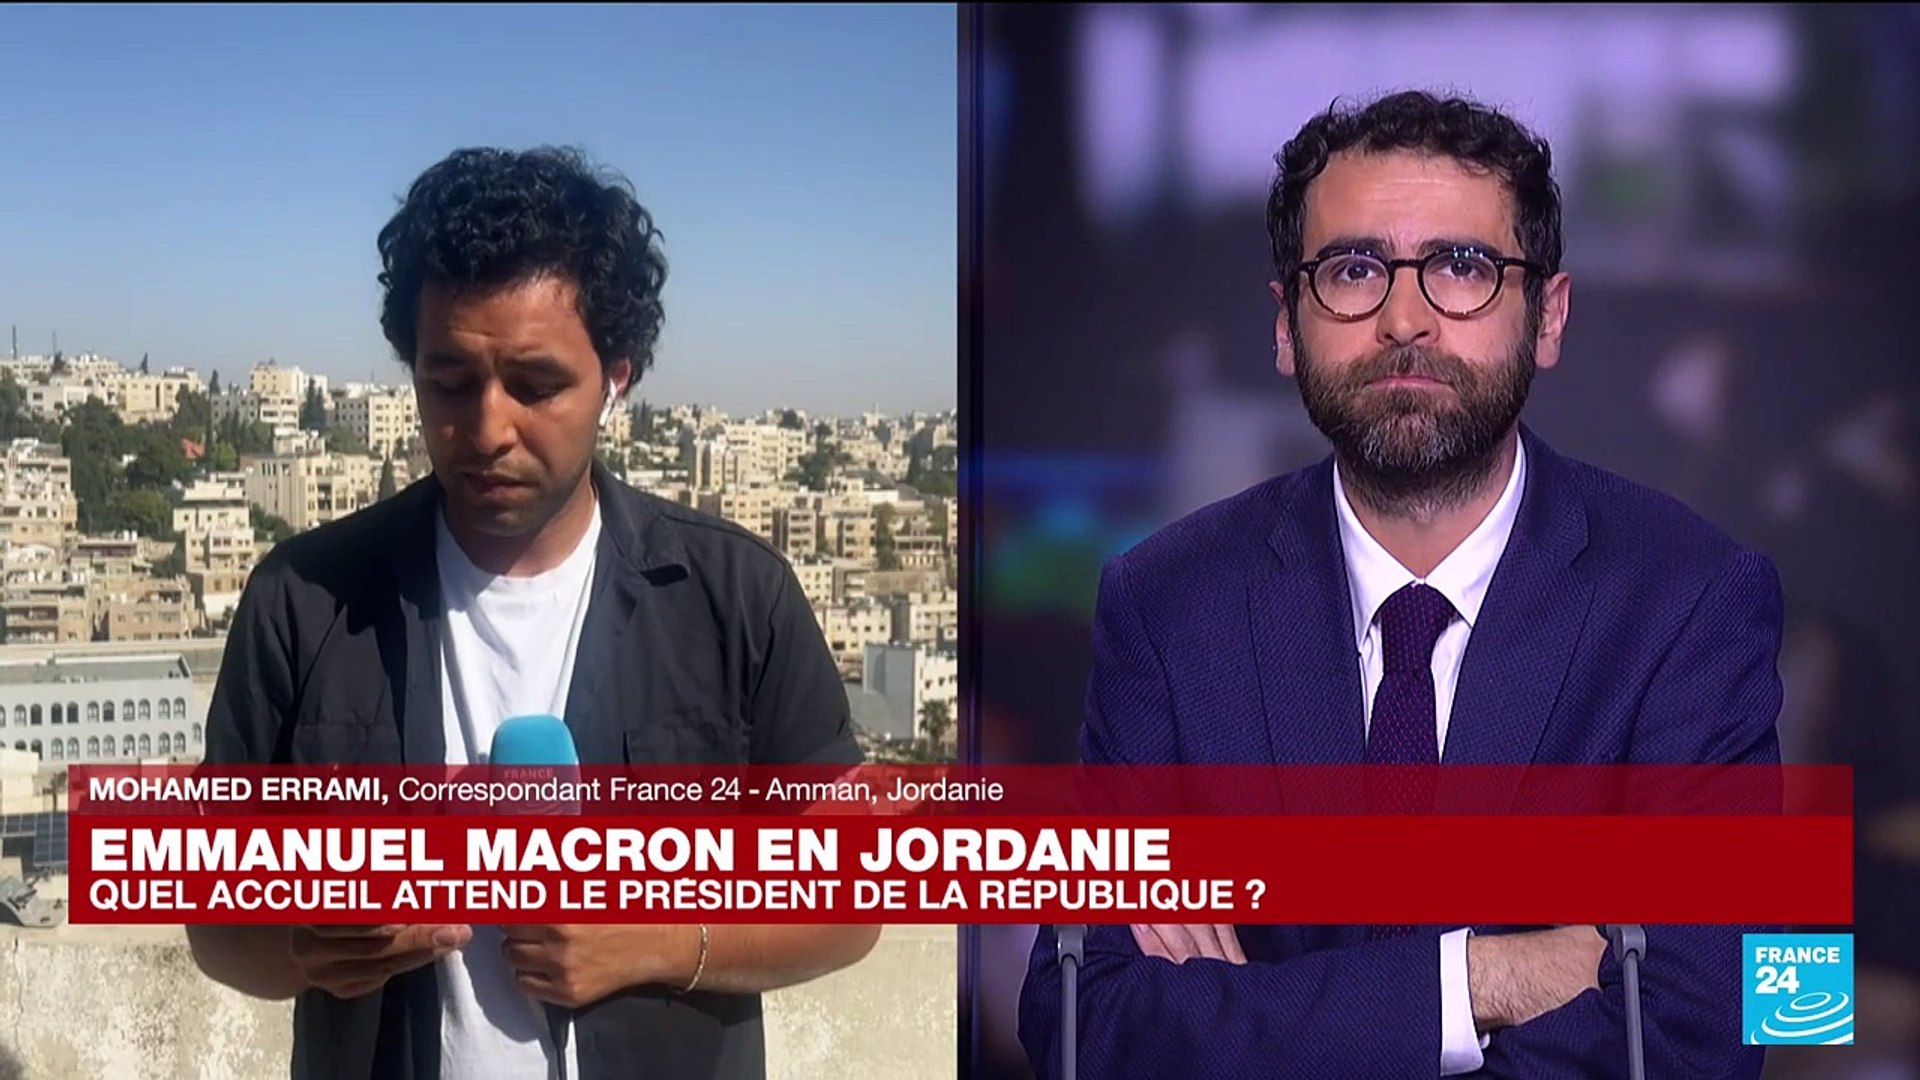 Emmanuel Macron en Jordanie : quel accueil attend le président de la  République française ? - Vidéo Dailymotion